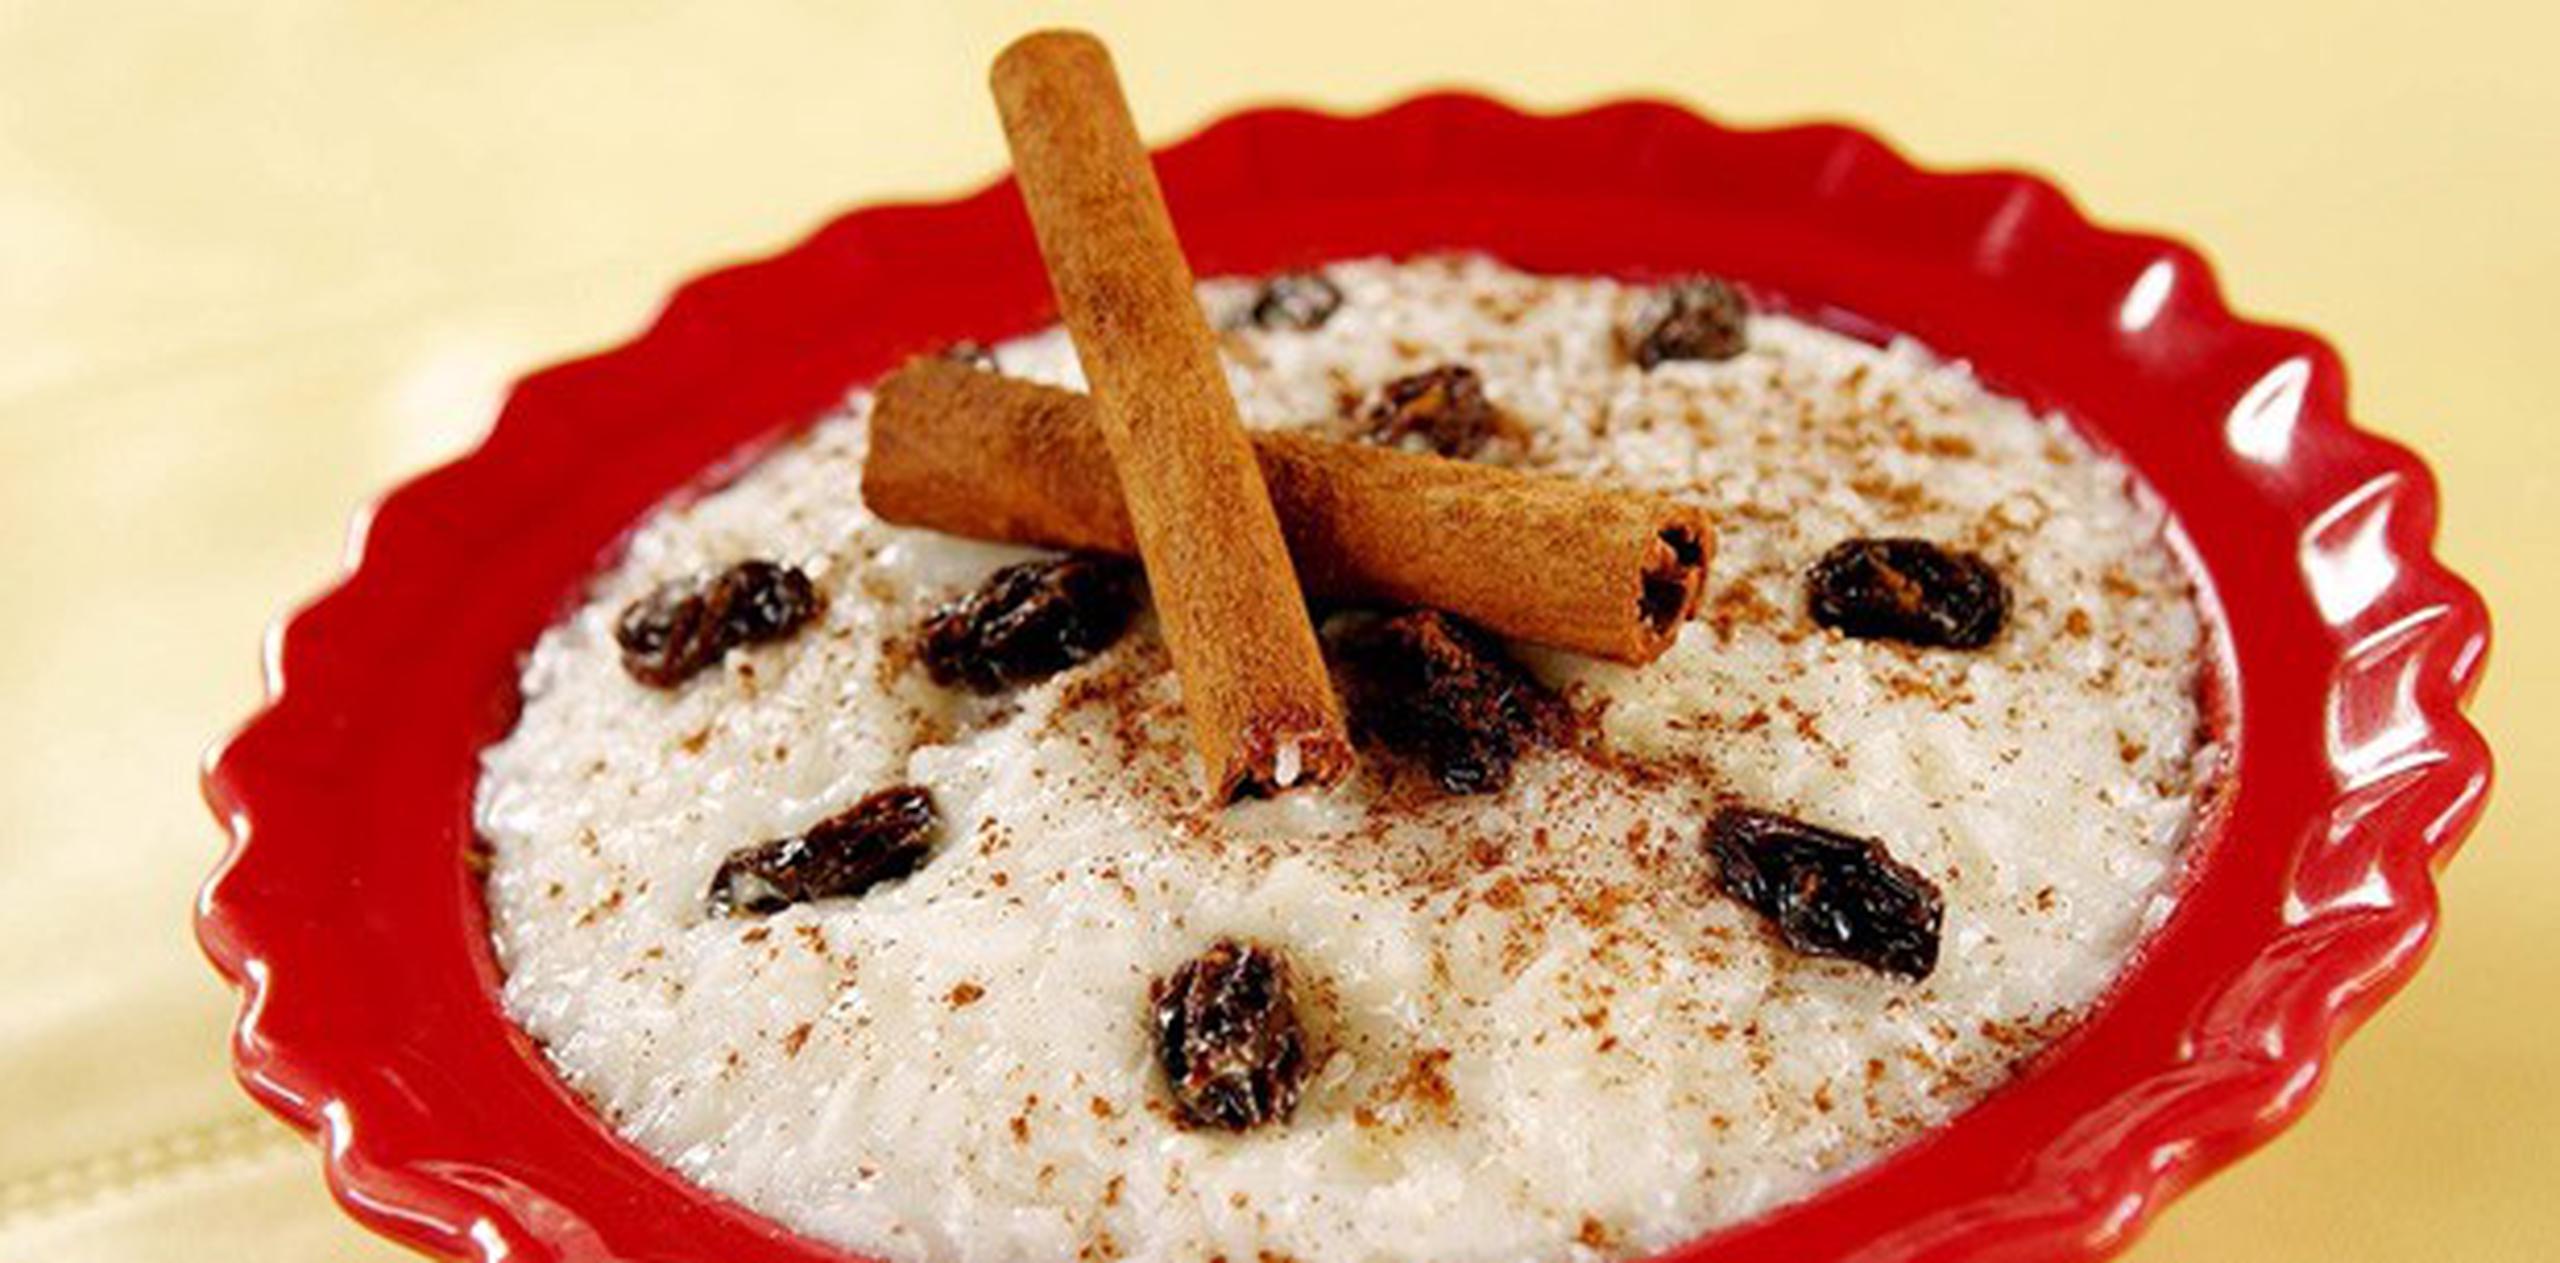 Uno de los postres típicos boricuas es el arroz con dulce y pasas. (Archivo)